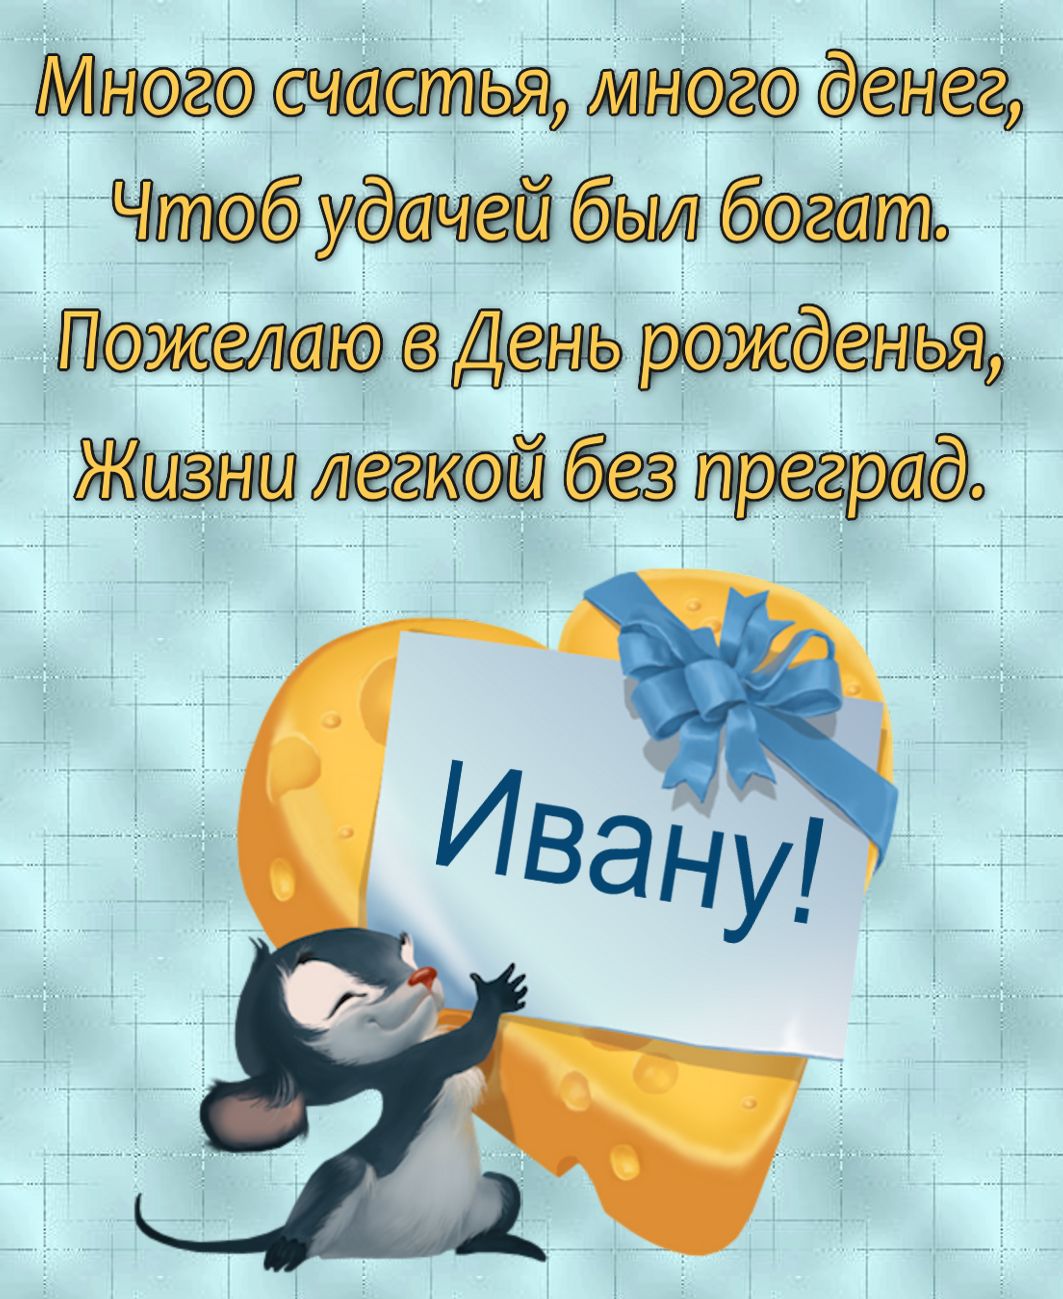 Открытка на День рождения с забавным мышонком поздравляющим Ивана